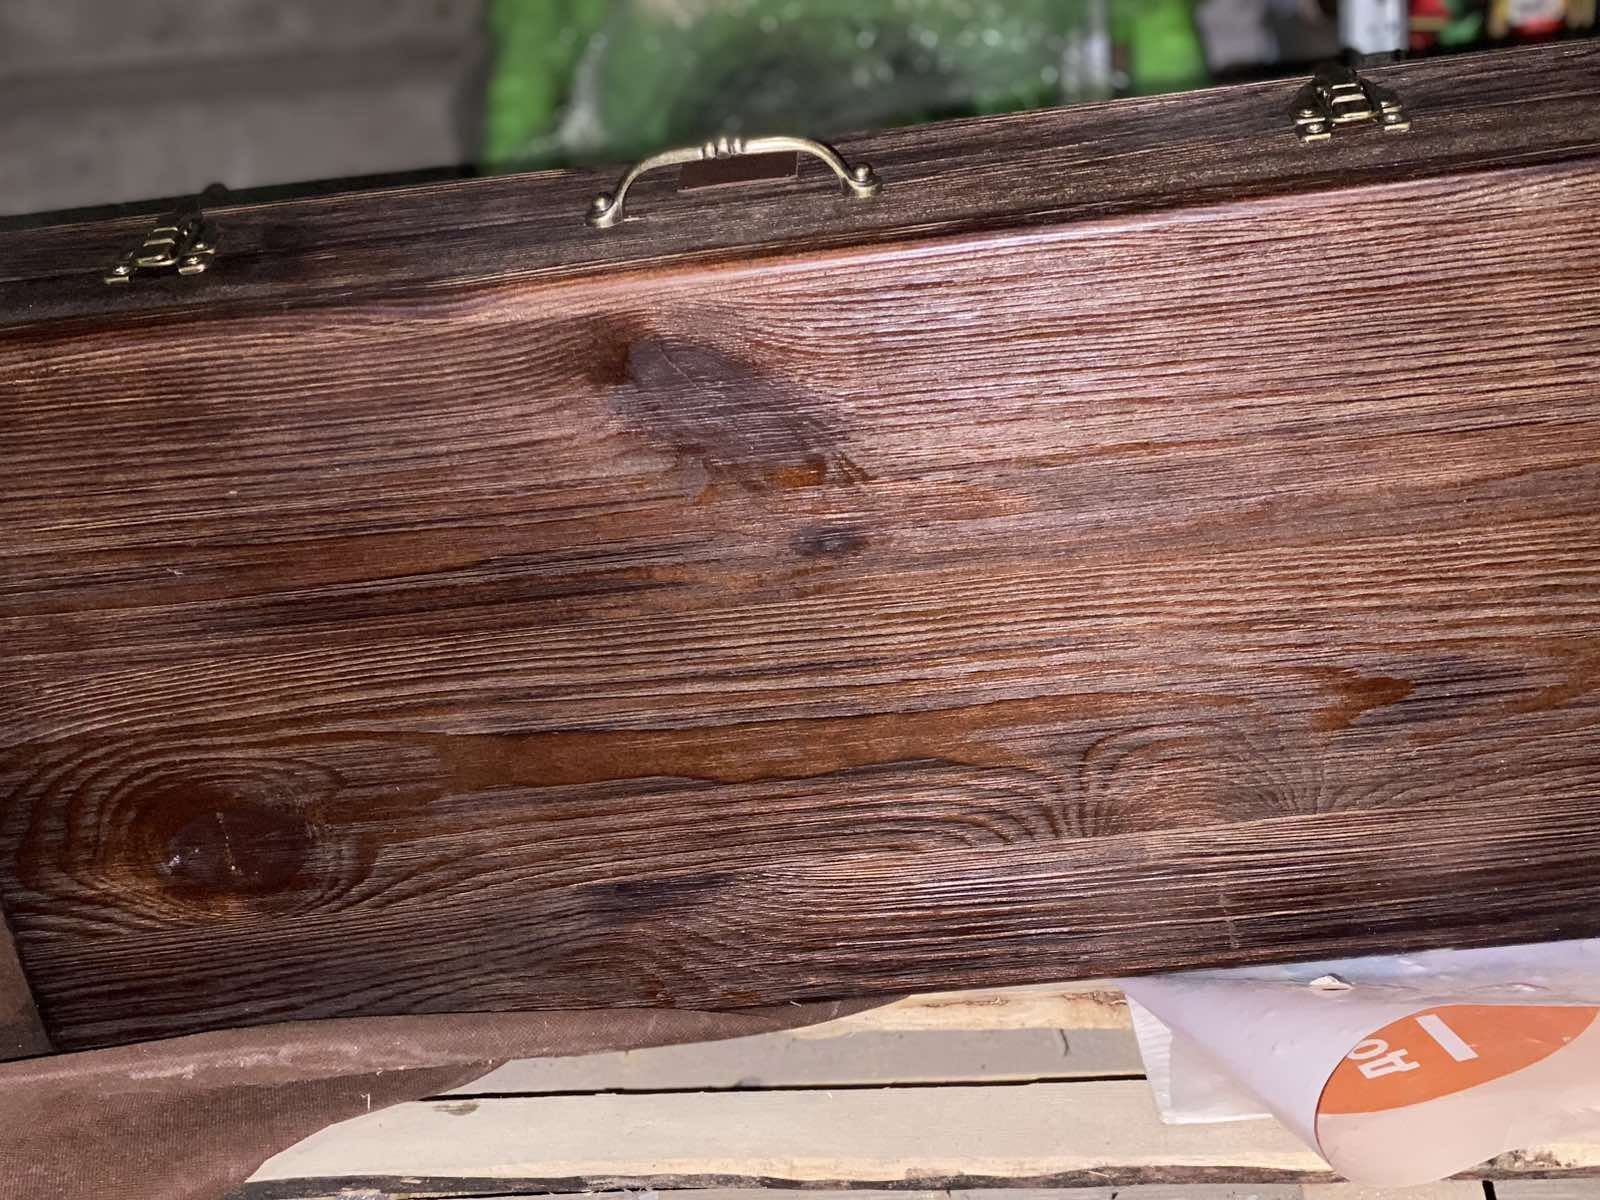 Набір шампурів Gorillas BBQ в дерев'яній коробці